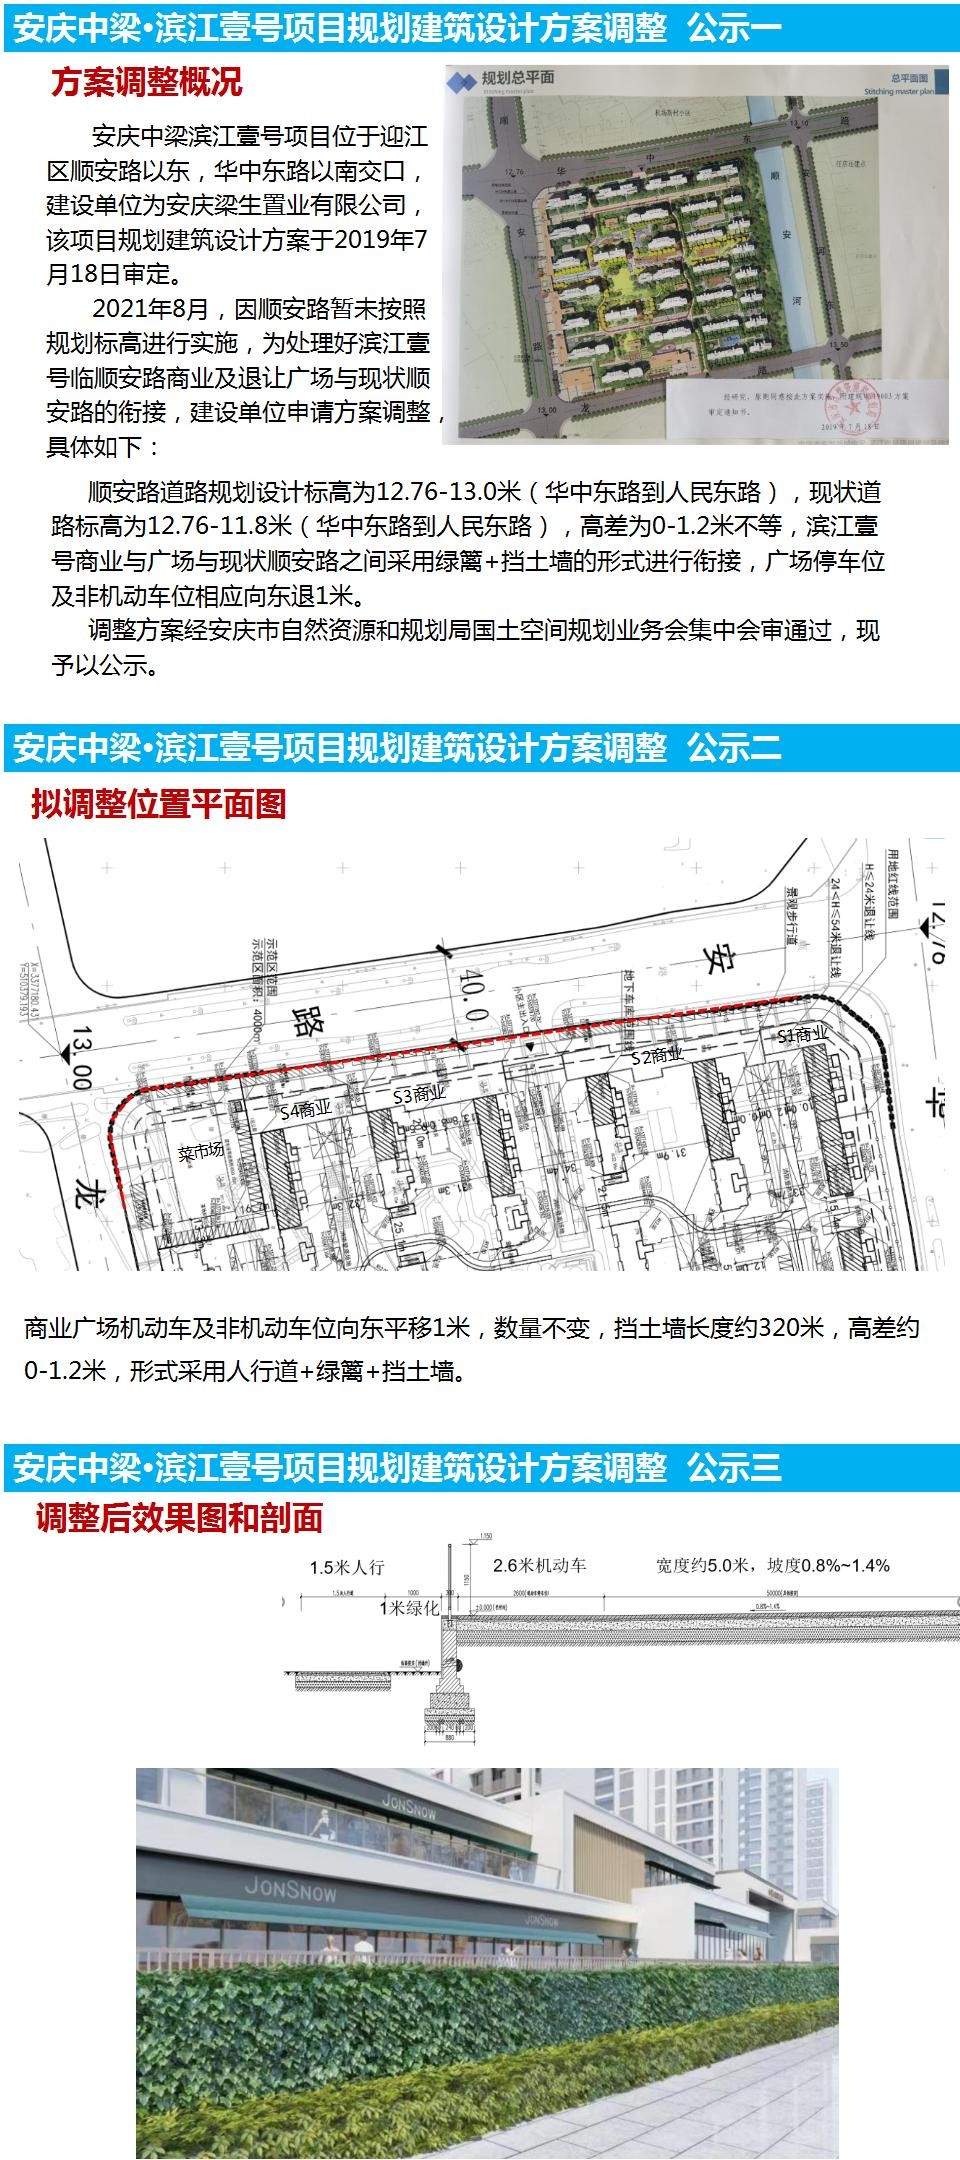 安庆市中梁滨江壹号项目建设工程 设计调整方案公示公告